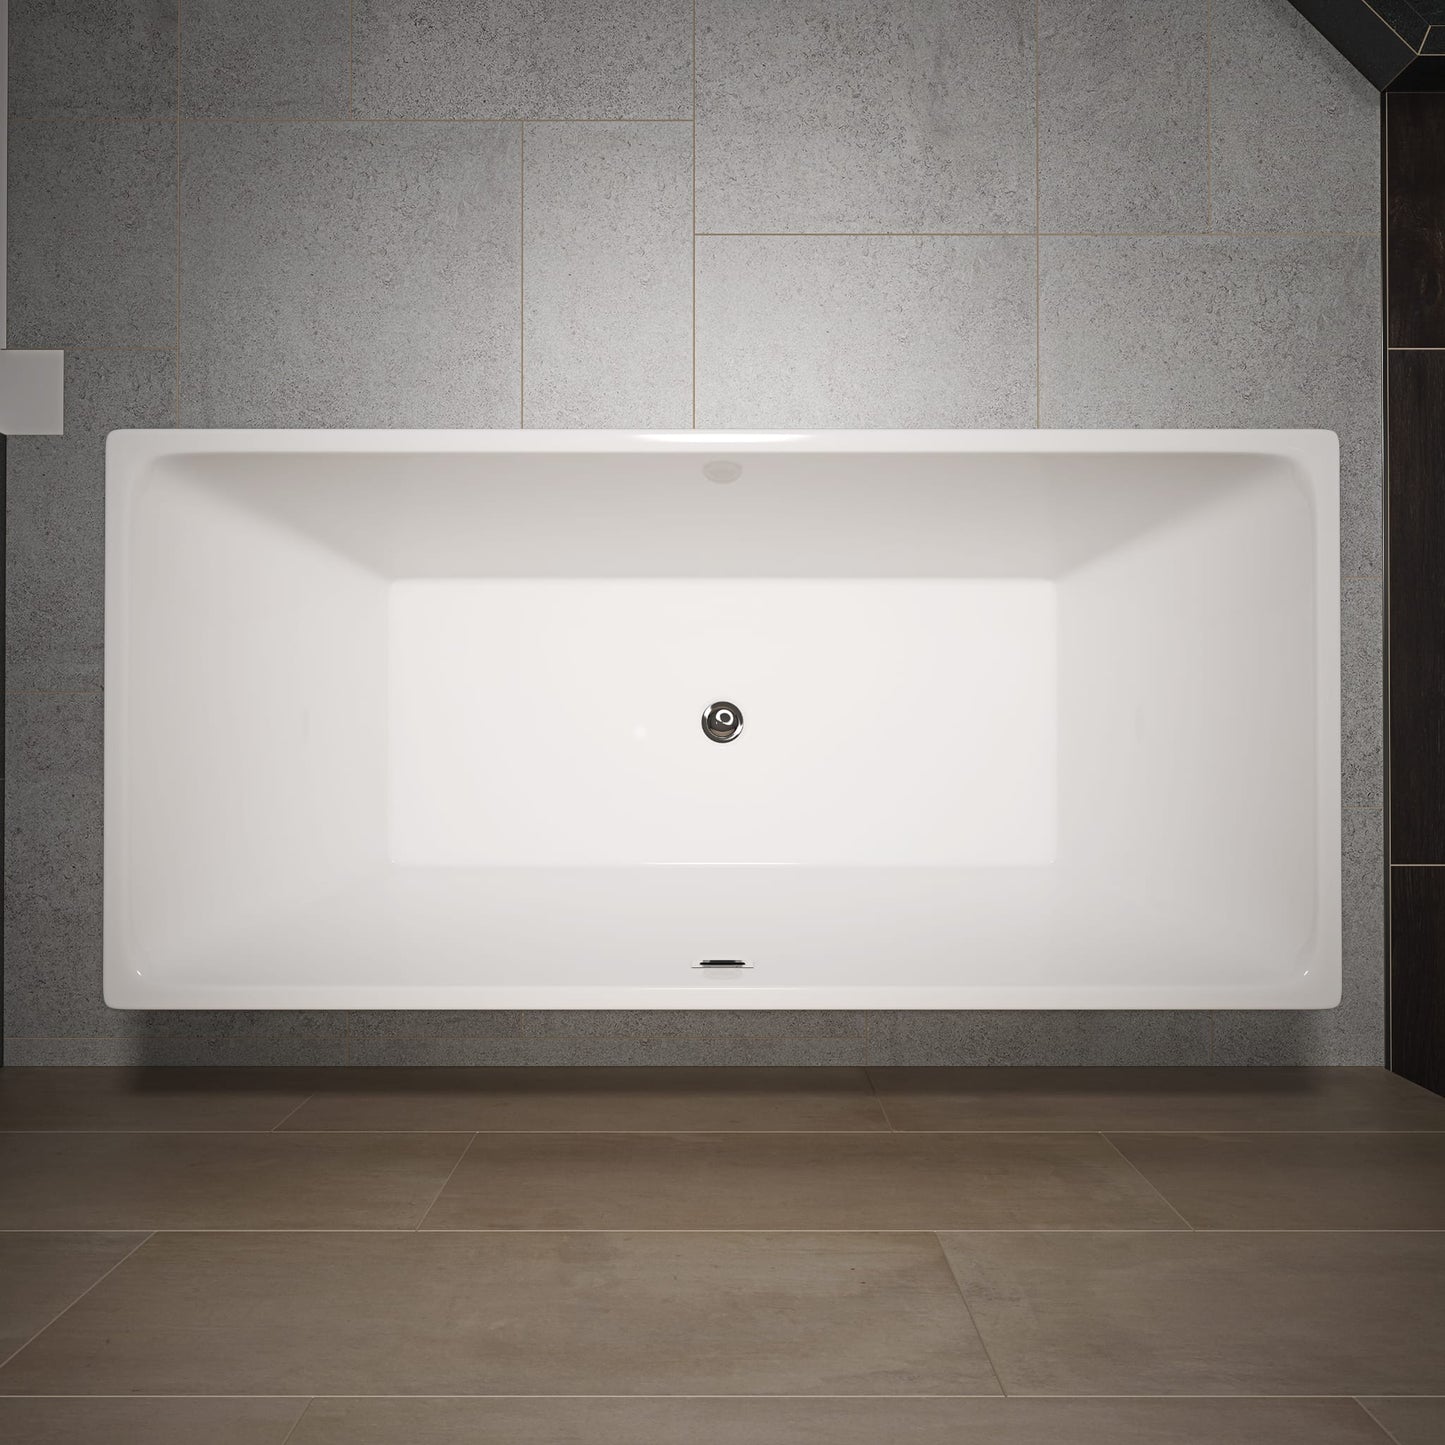 RL-MF-1219 Free standing bath tub 67''X32''X23''